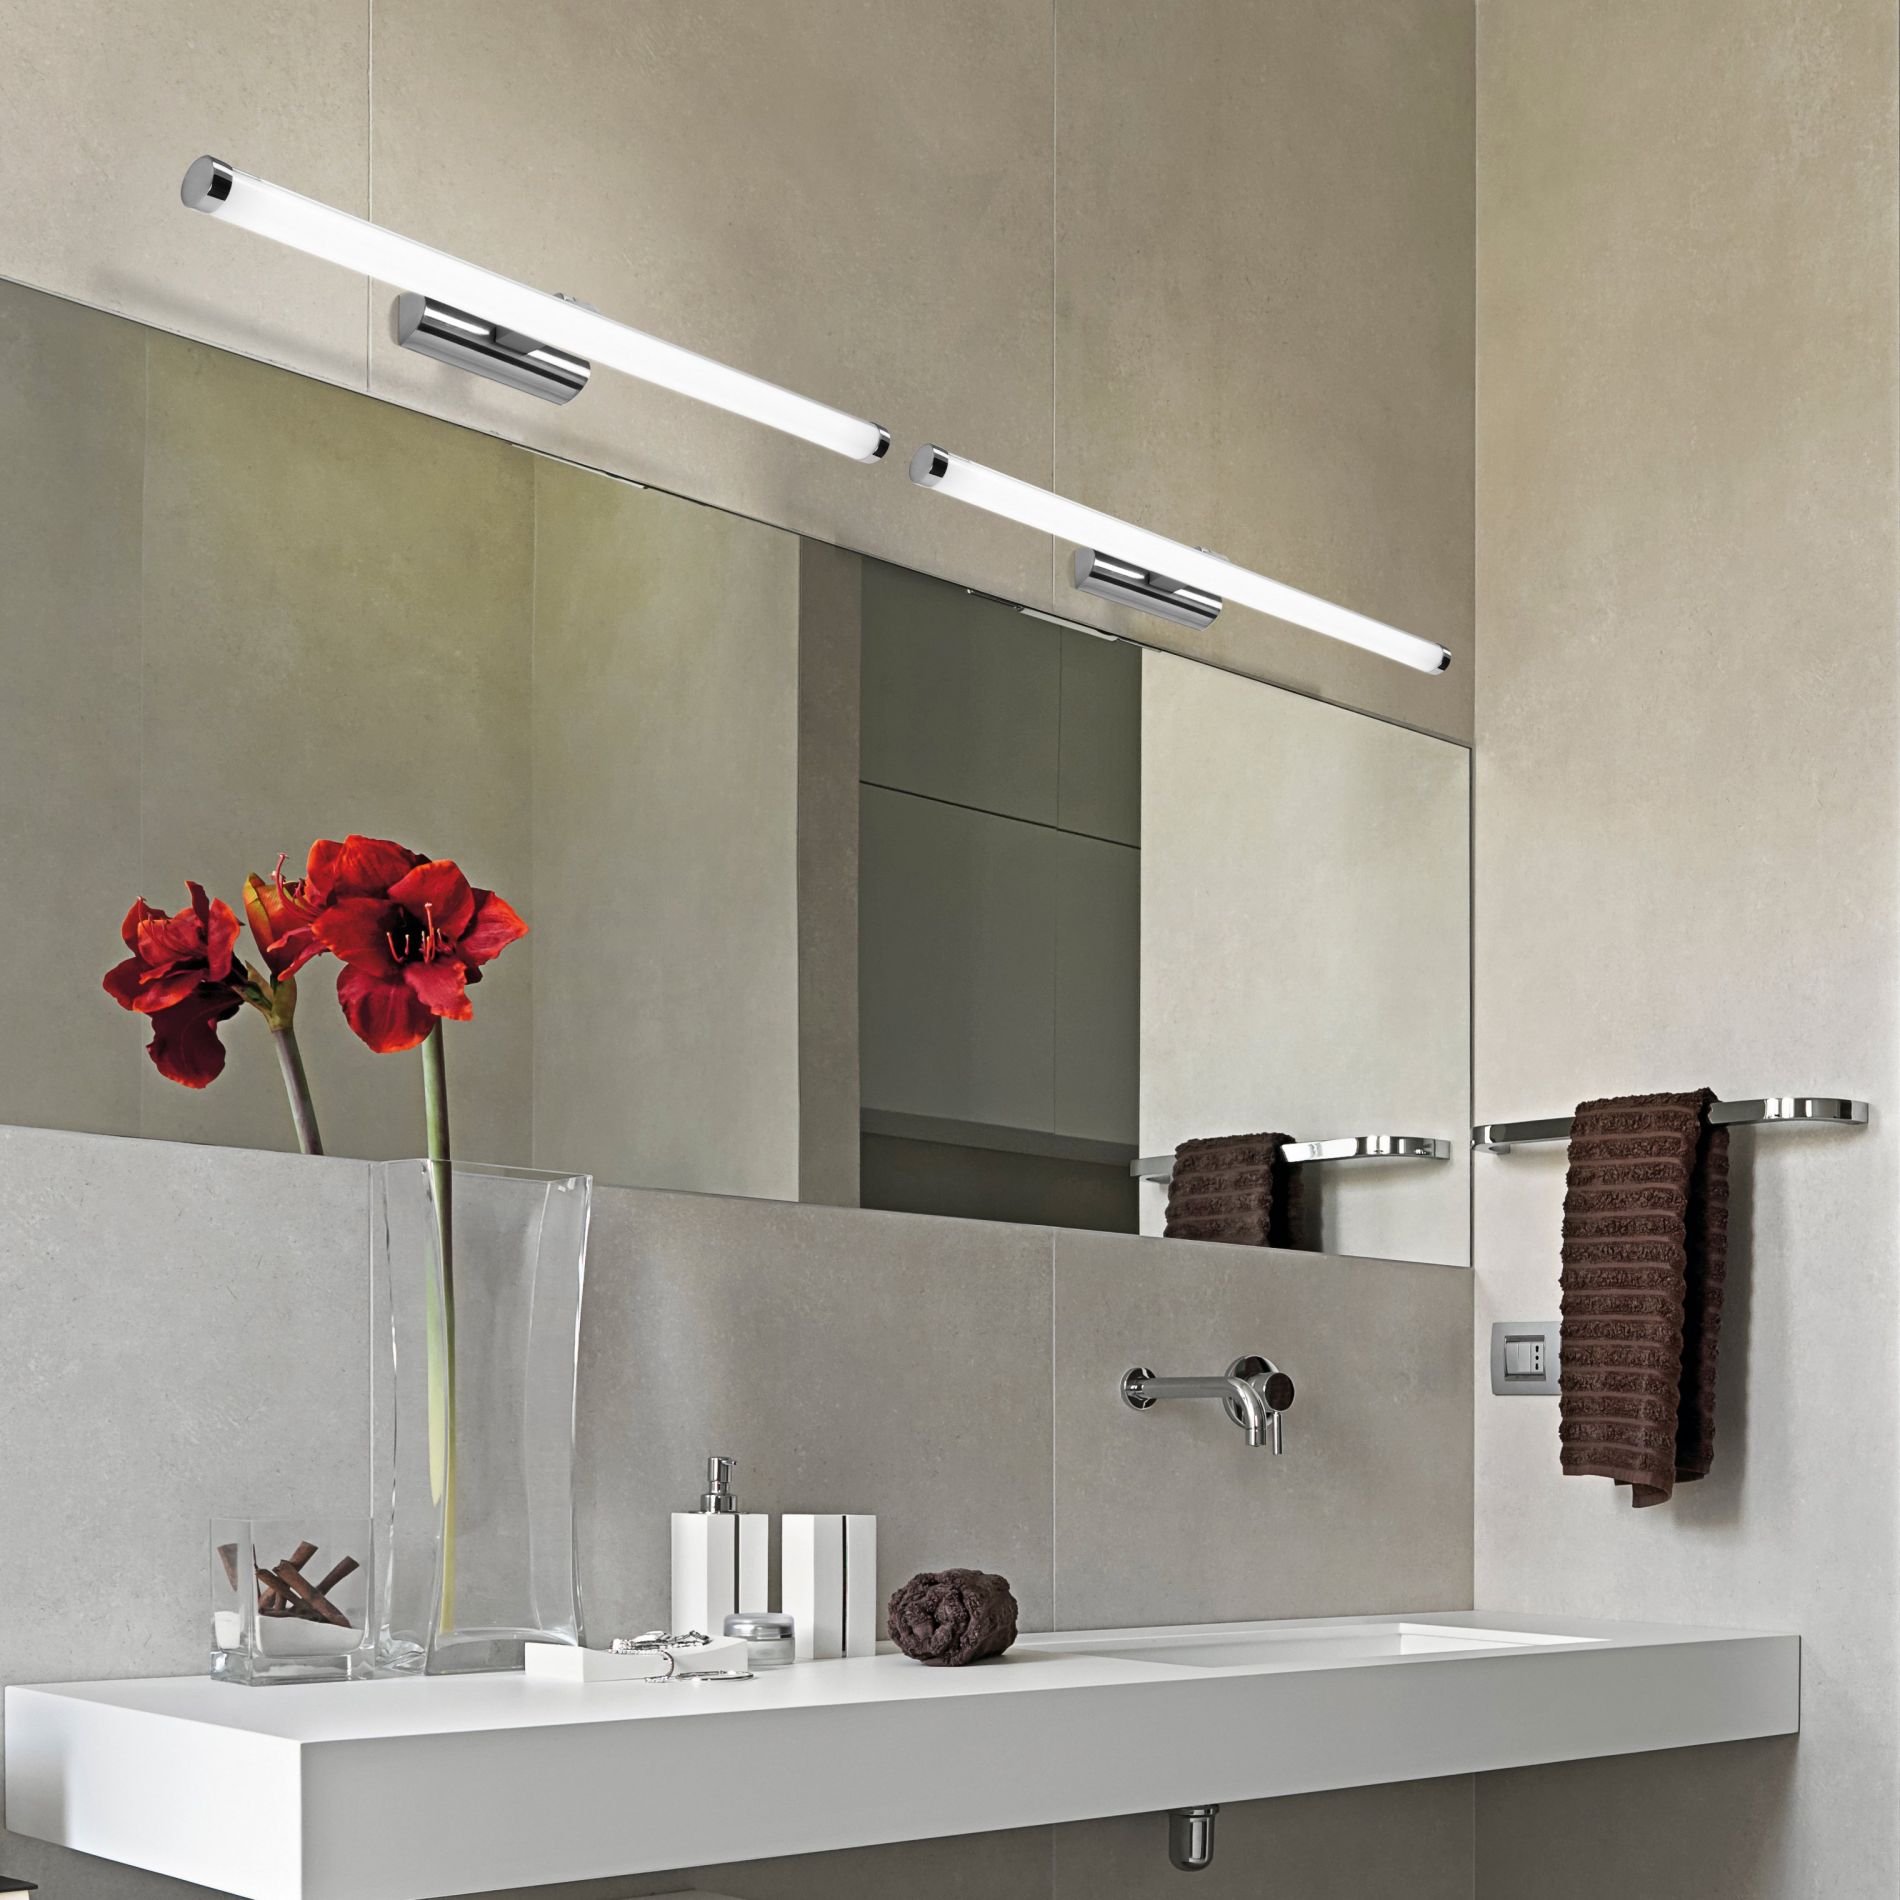 Réglettes LED pour salle de bain – Éclairage fonctionnel dans la